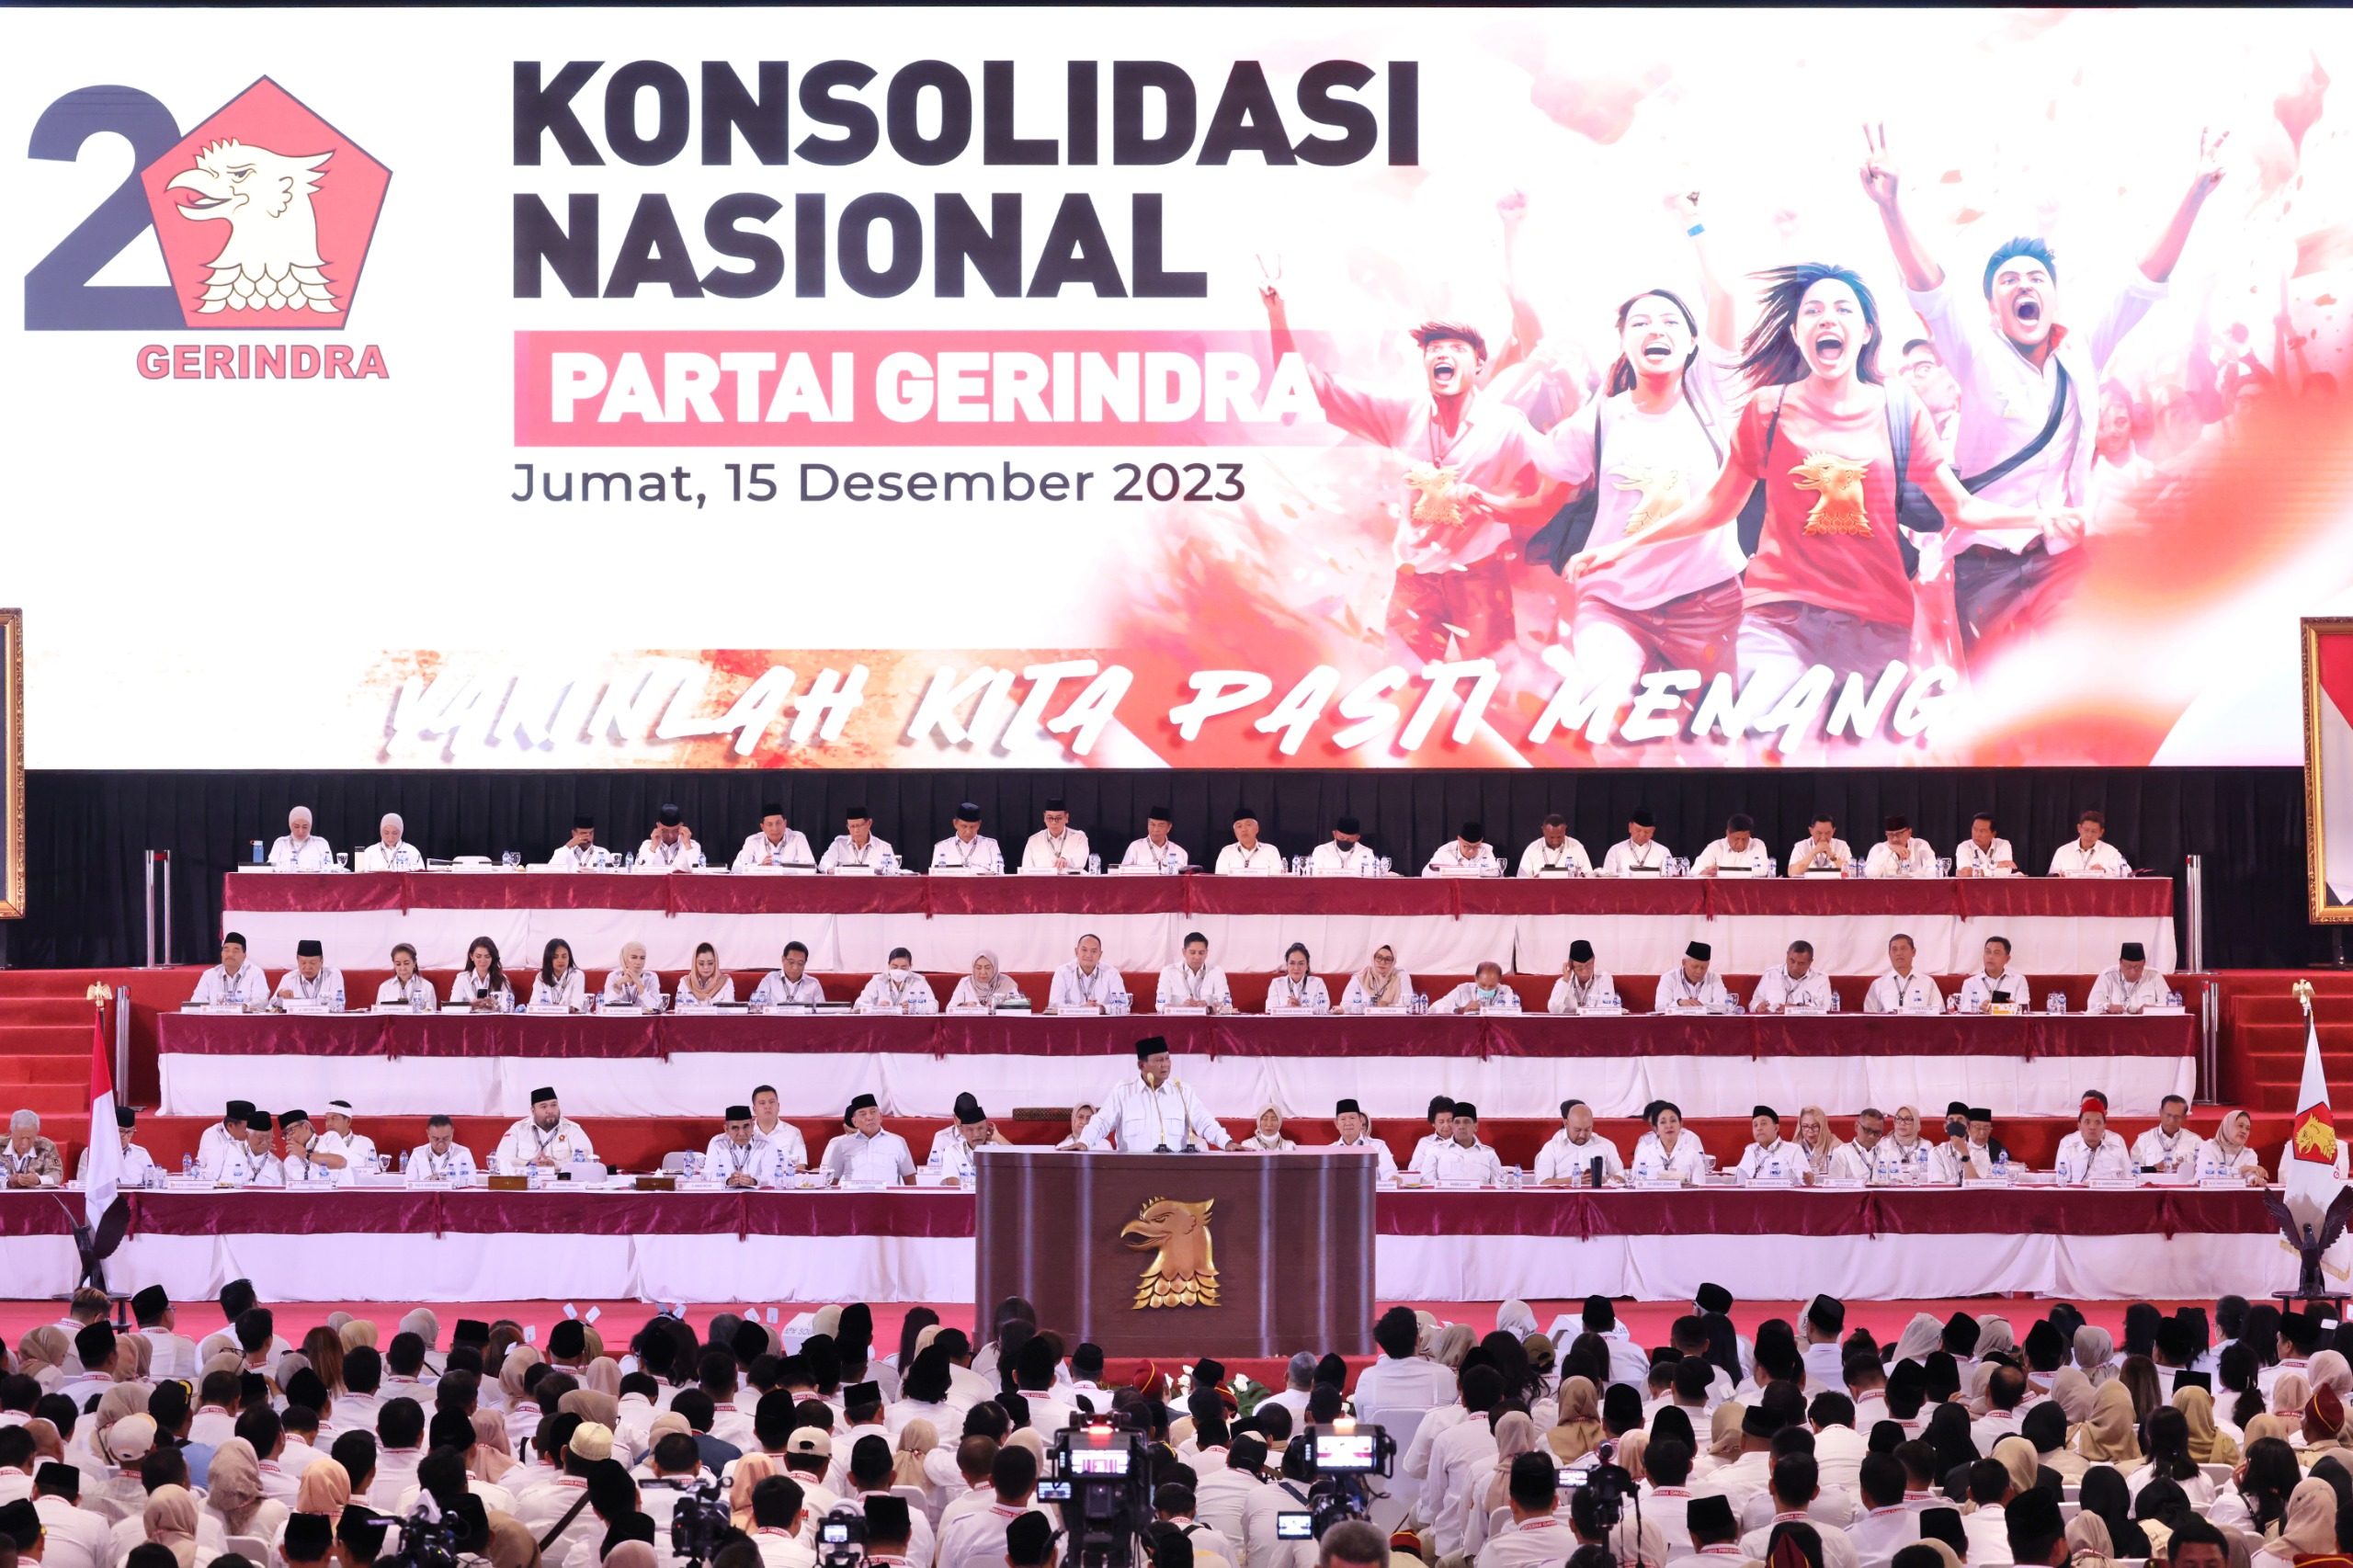 Prabowo Sebut Hilirisasi Adalah Kunci Kemakmuran Indonesia